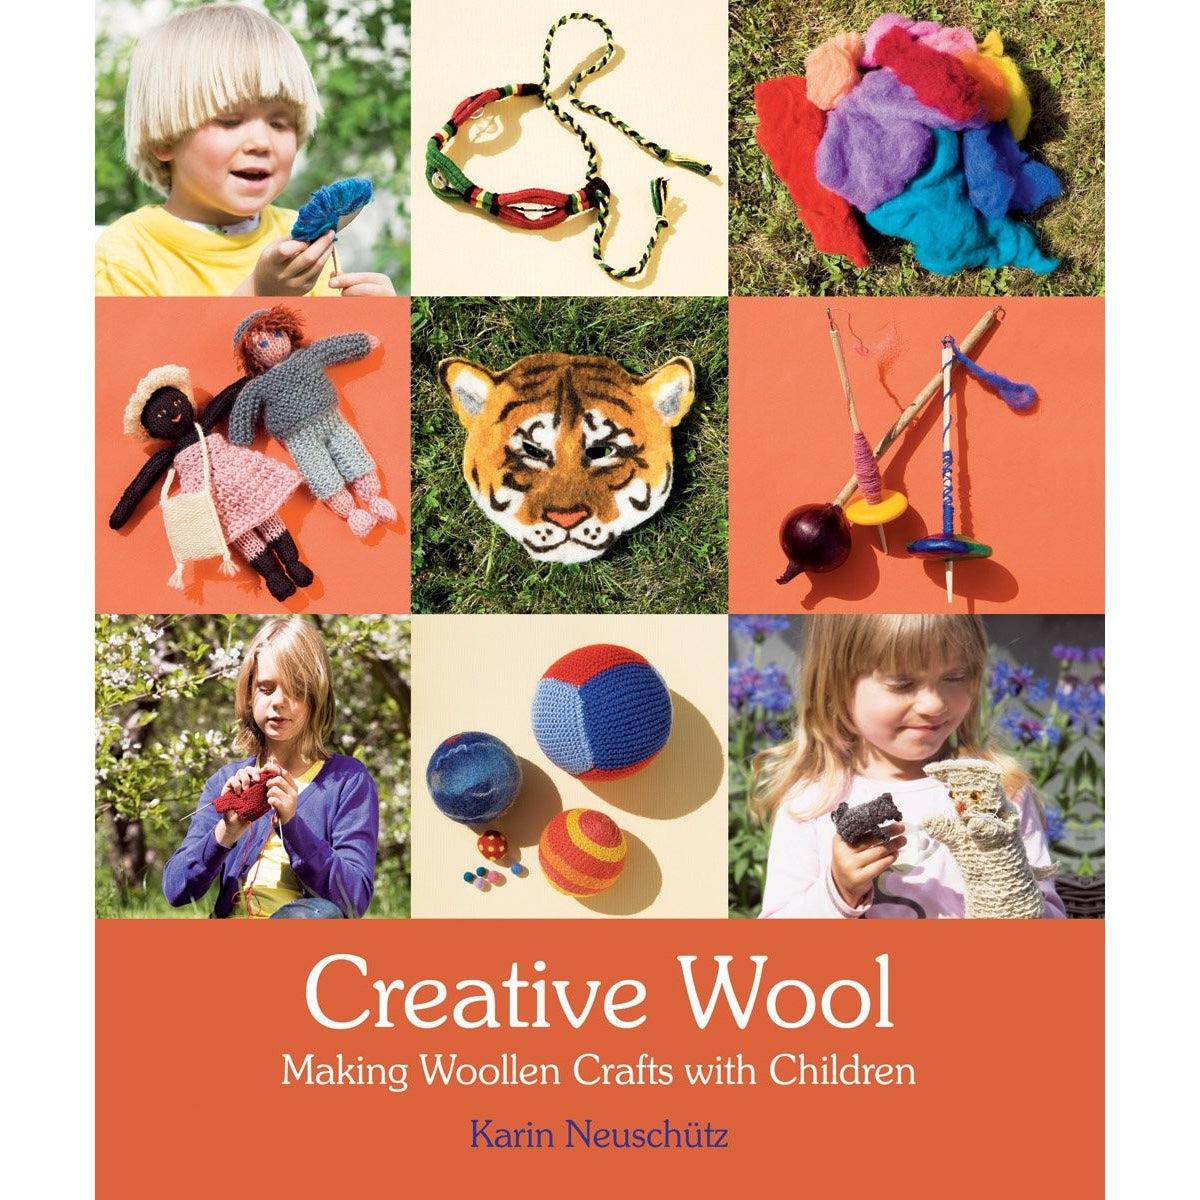 Creative Wool: Making Woollen Crafts With Children - Karin Neuschutz